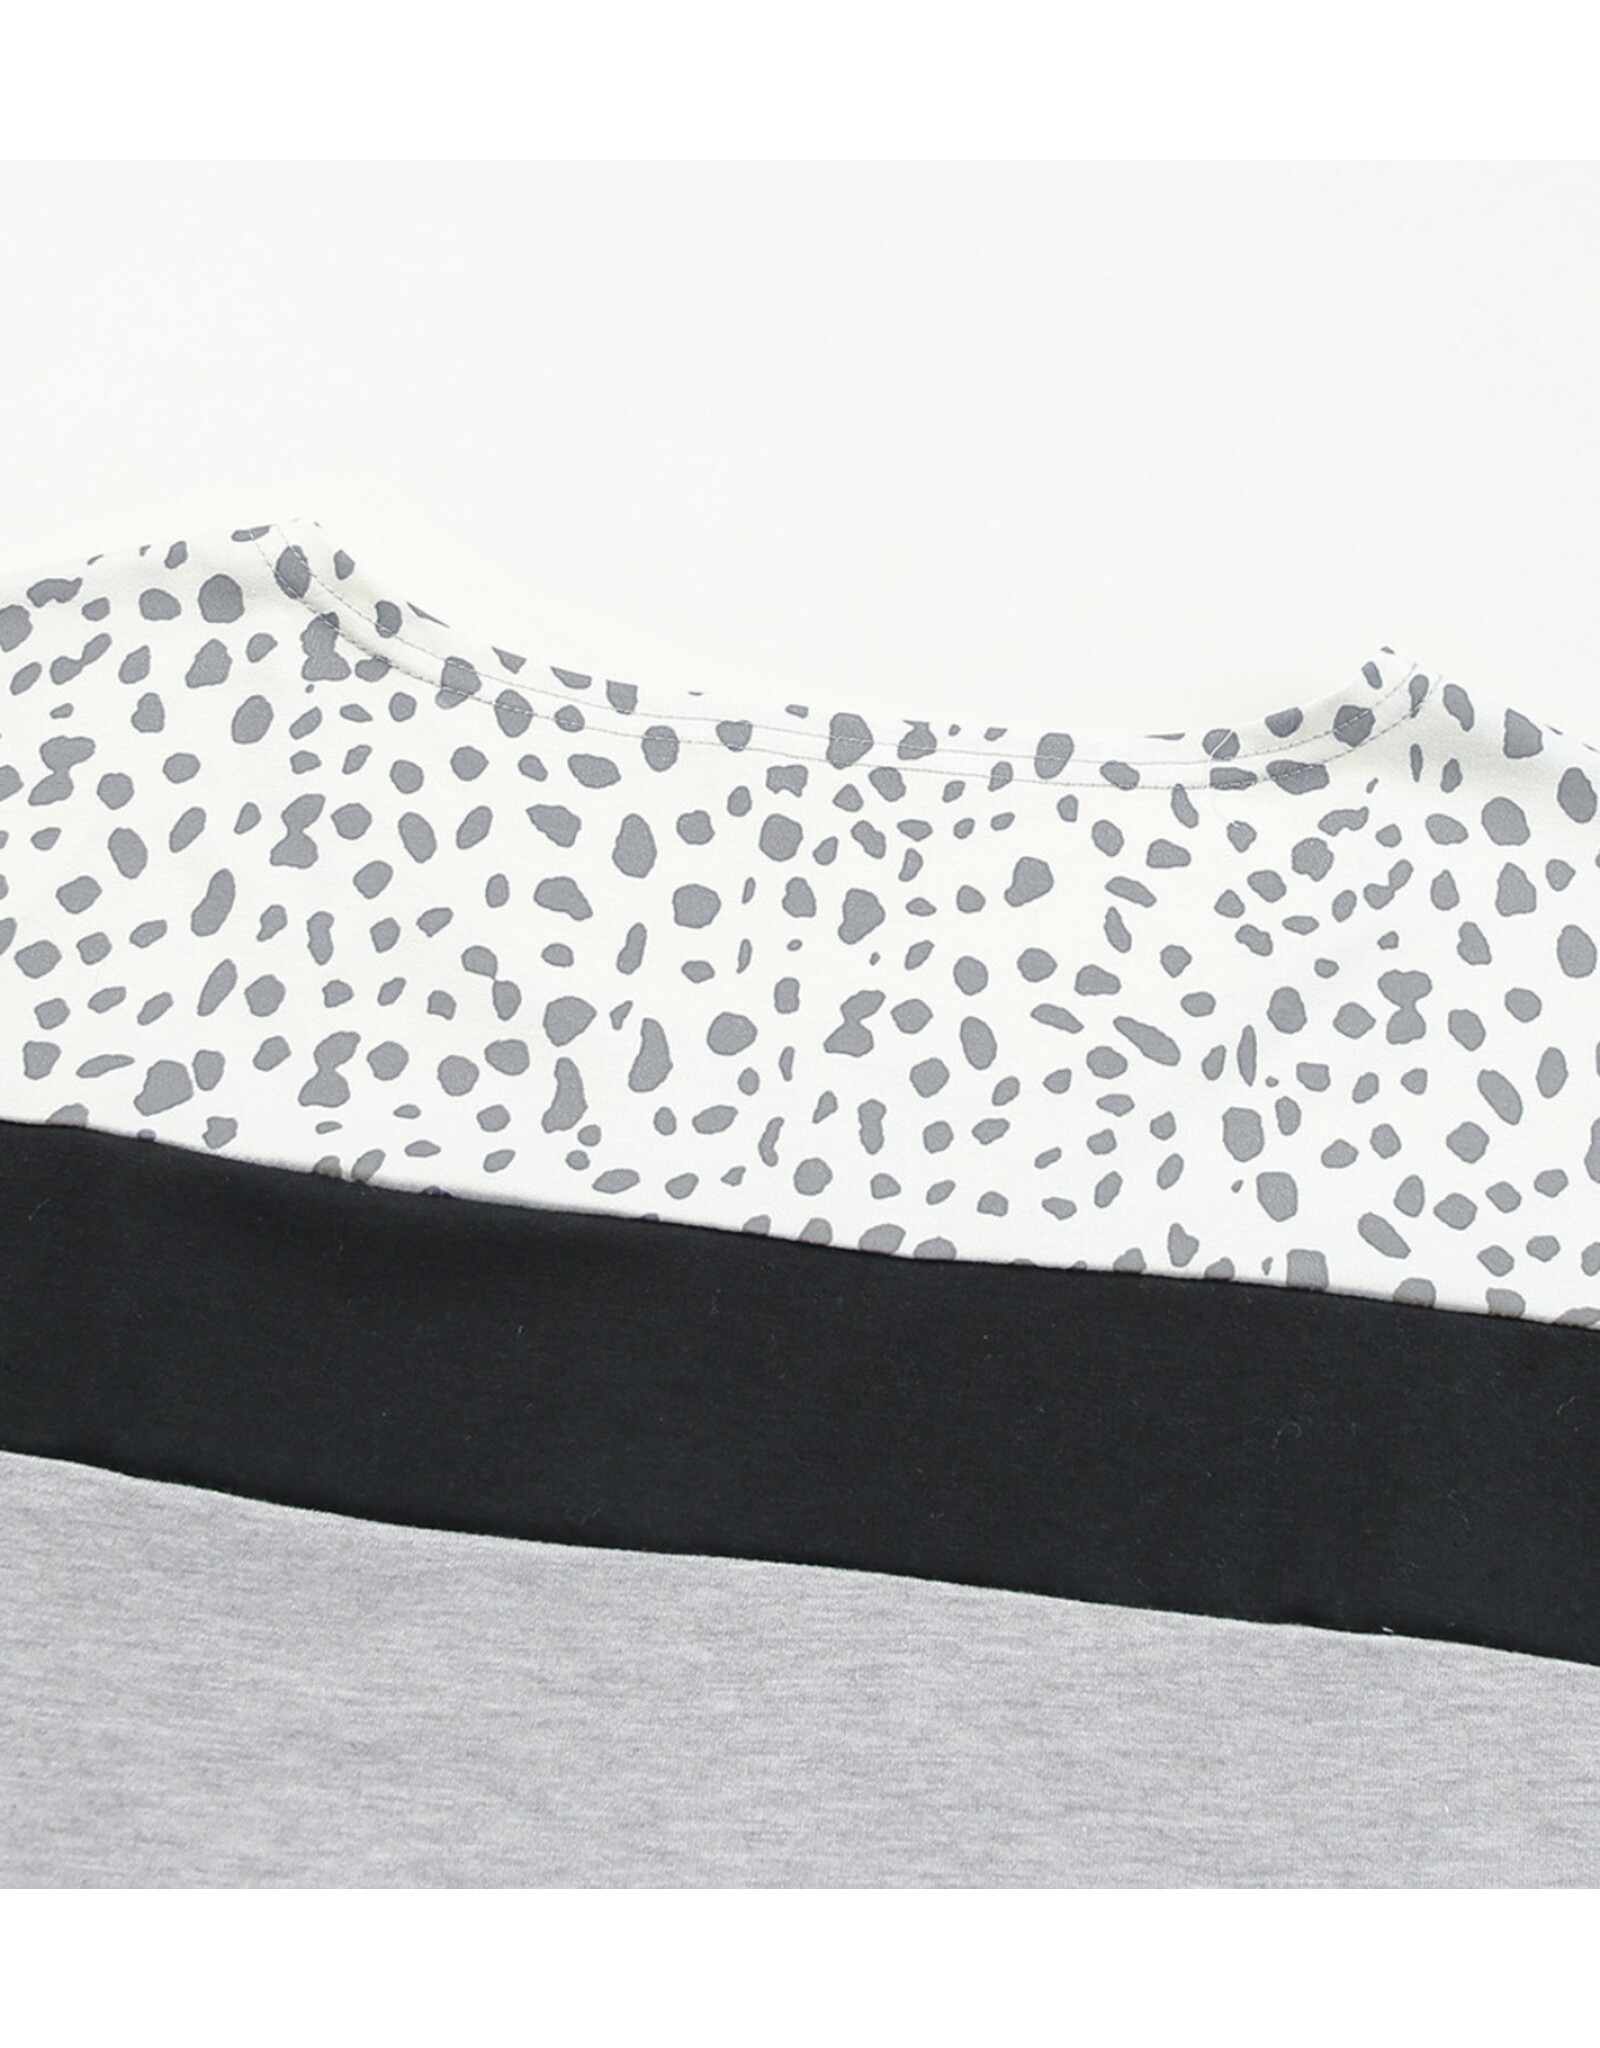 LATA Gray Leopard Top/ Shorts set